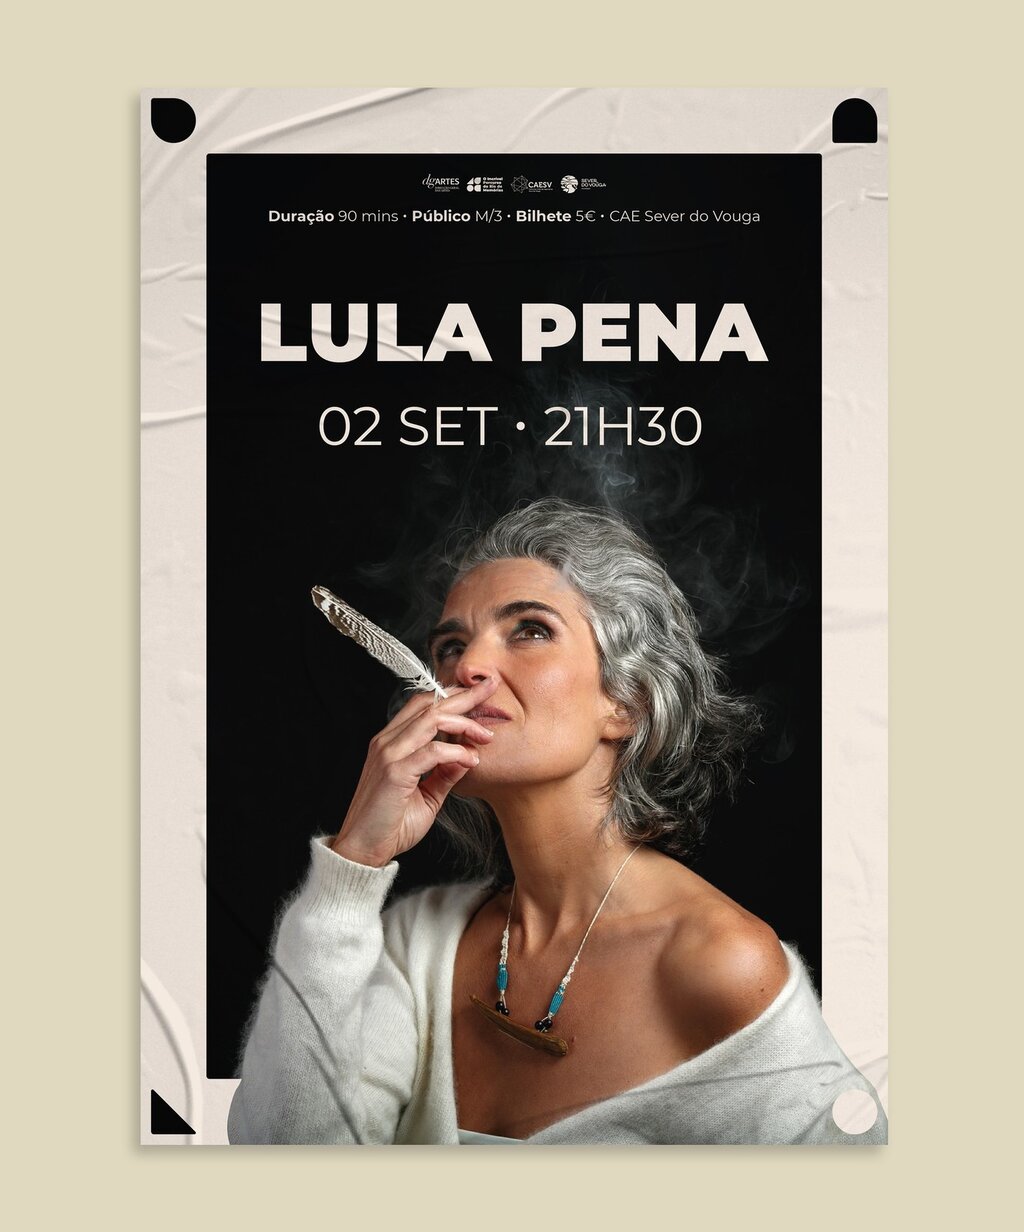 2 Set . Lula Pena - Concerto no CAE